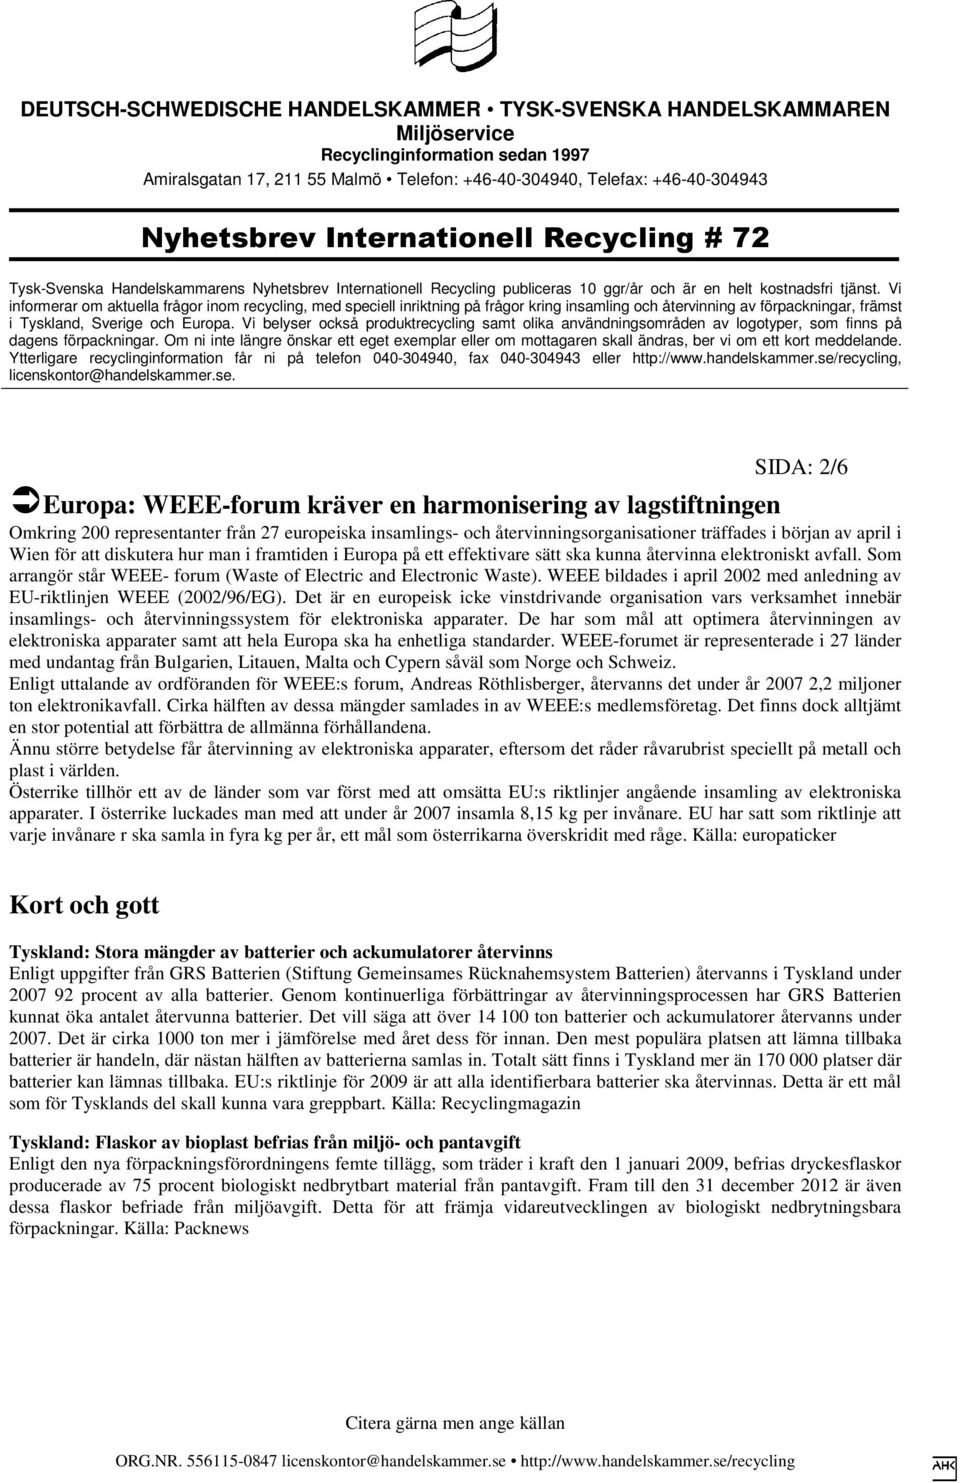 WEEE bildades i april 2002 med anledning av EU-riktlinjen WEEE (2002/96/EG).